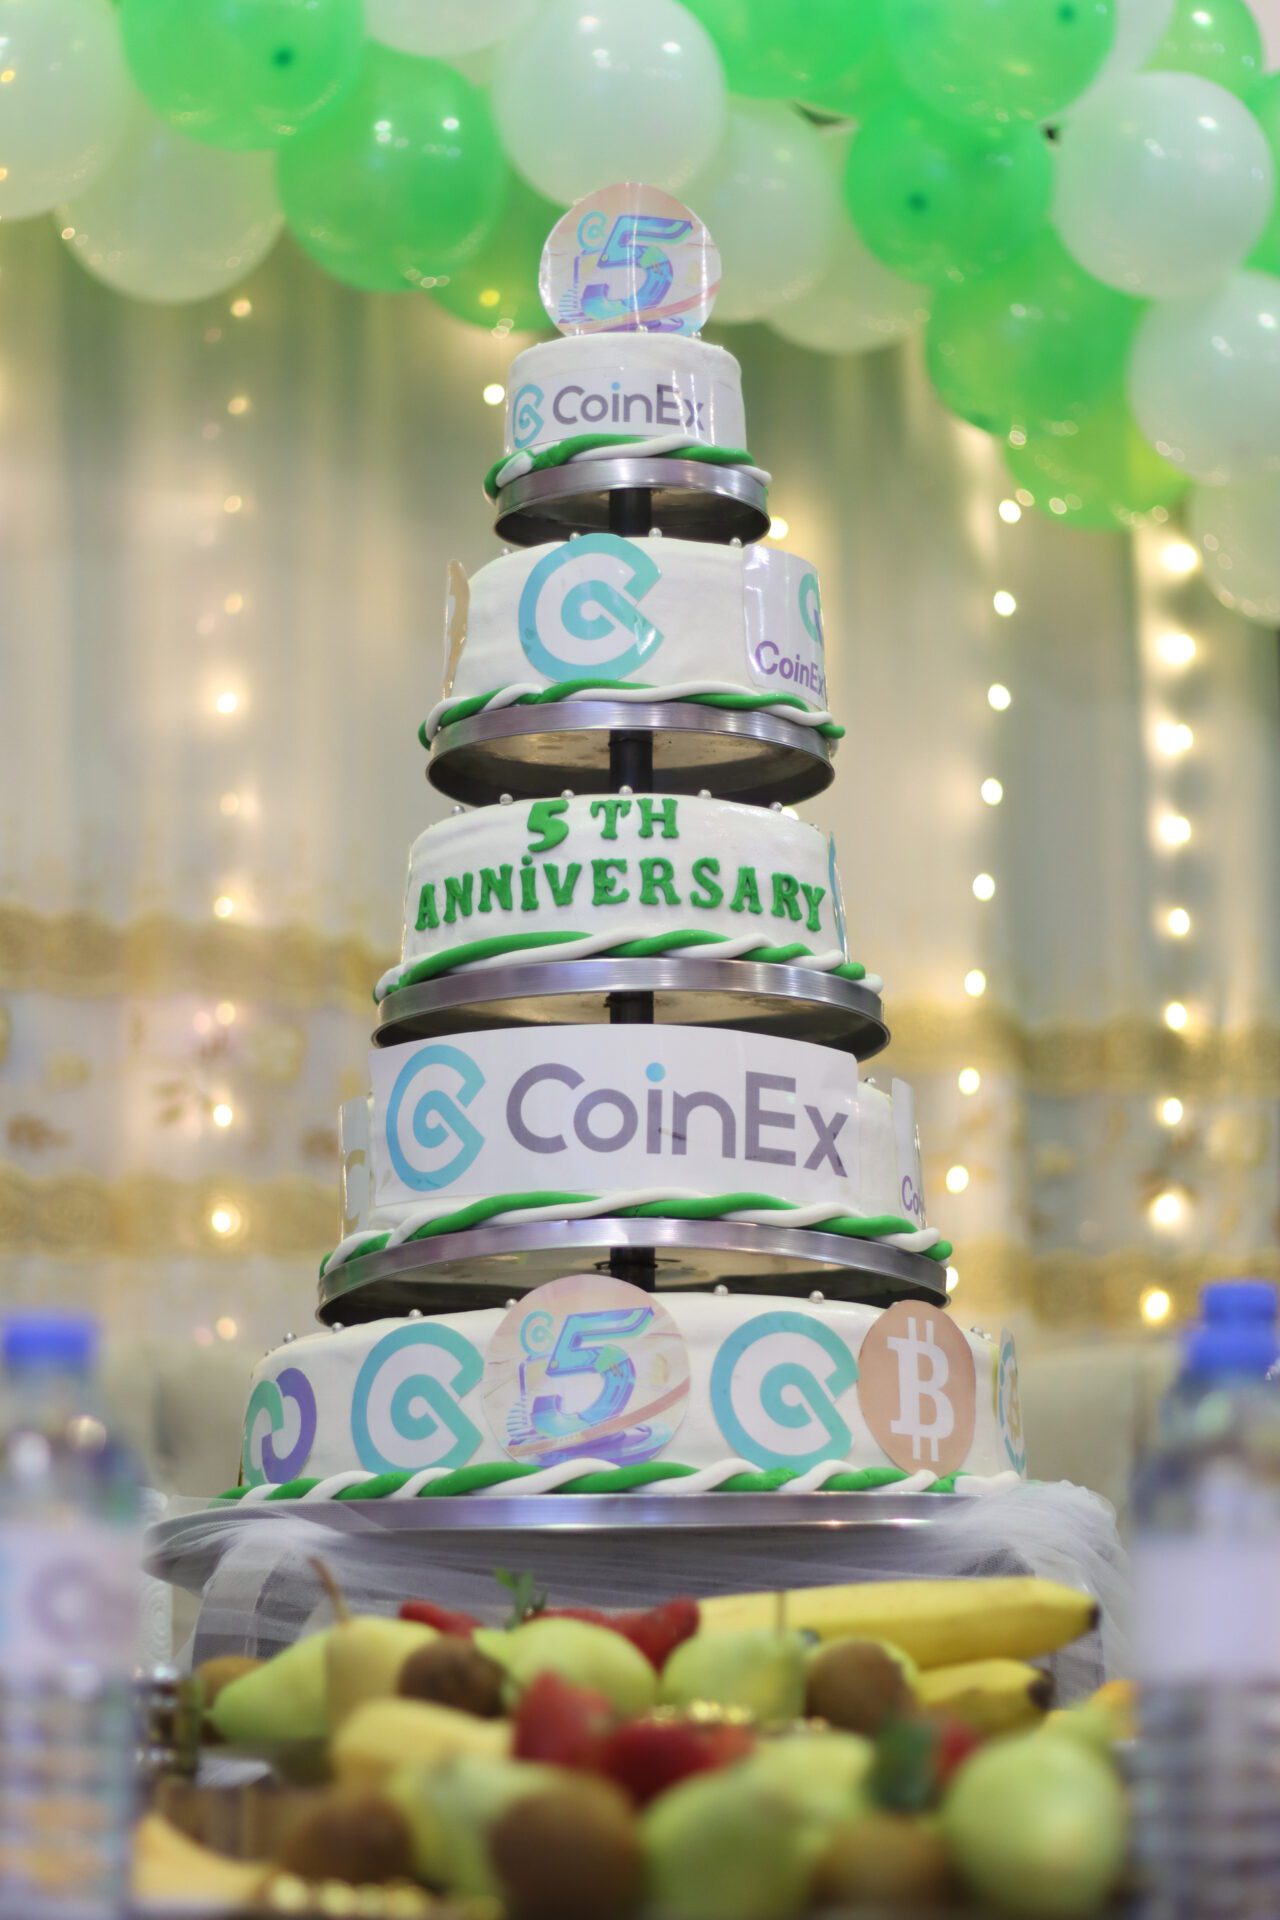 ذكرى CoinEx الخامسة.. تفاصيل الحفلة وإليك مسابقة جديدة